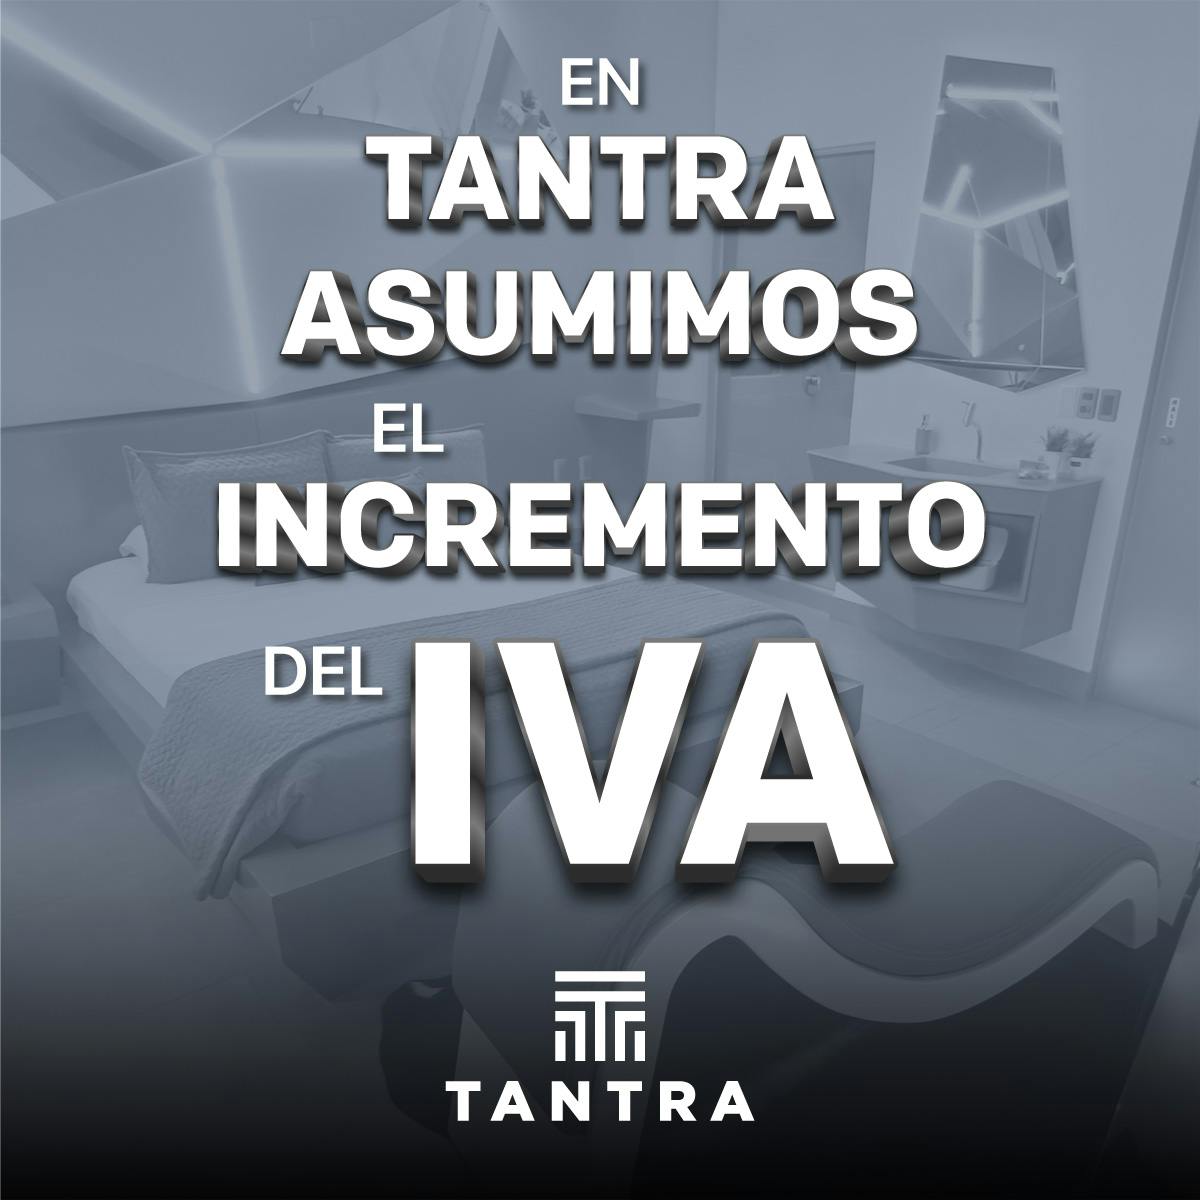 En Tantra asumimos el incremento del IVA